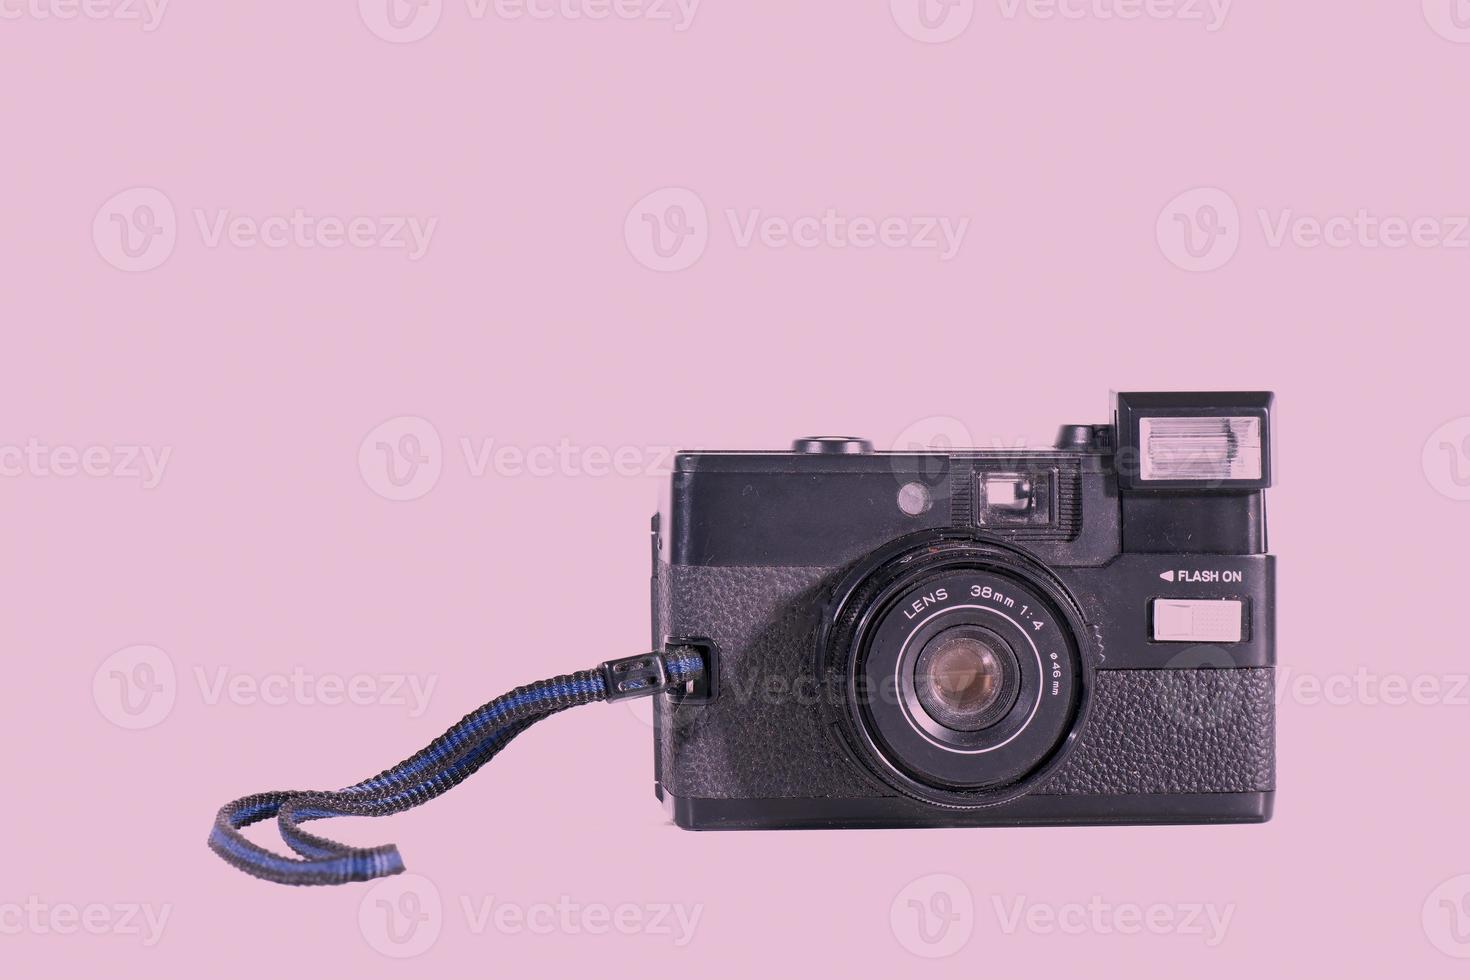 appareil photo vintage sur fond rose